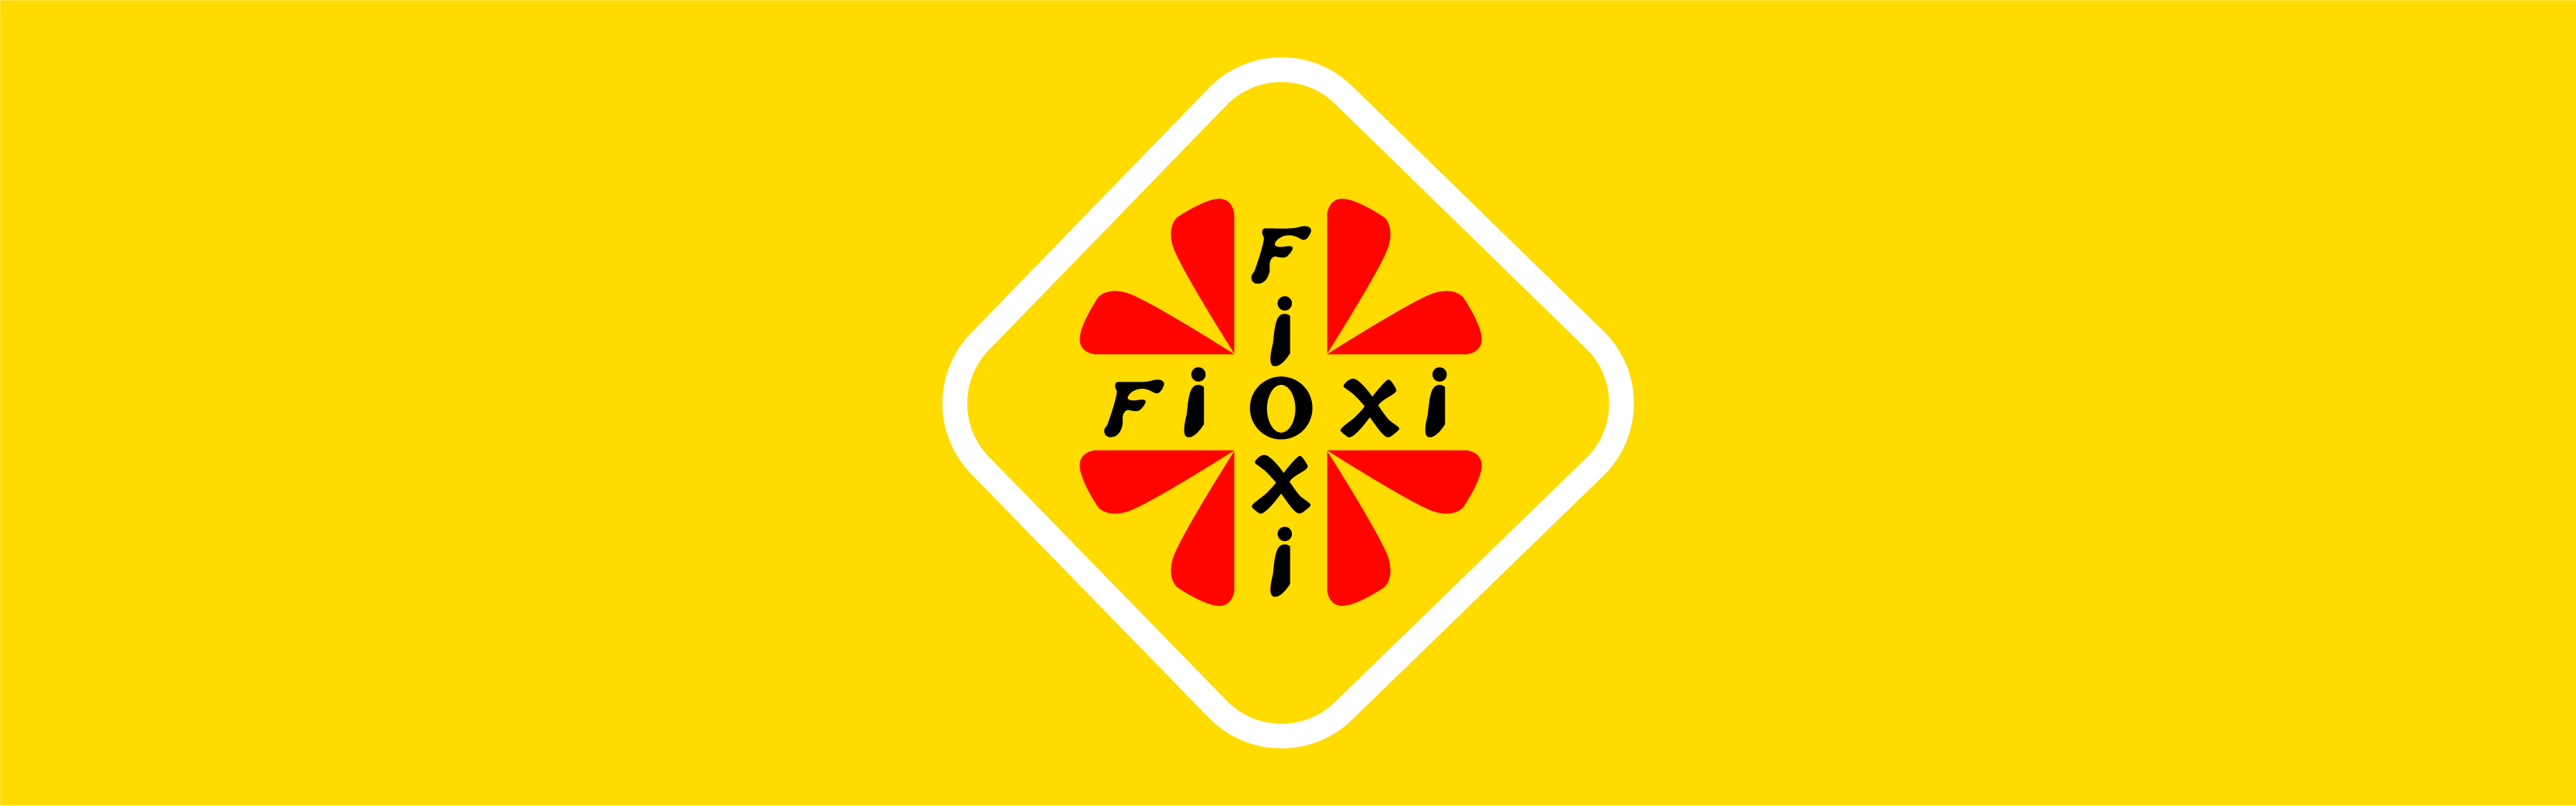 Fioxi